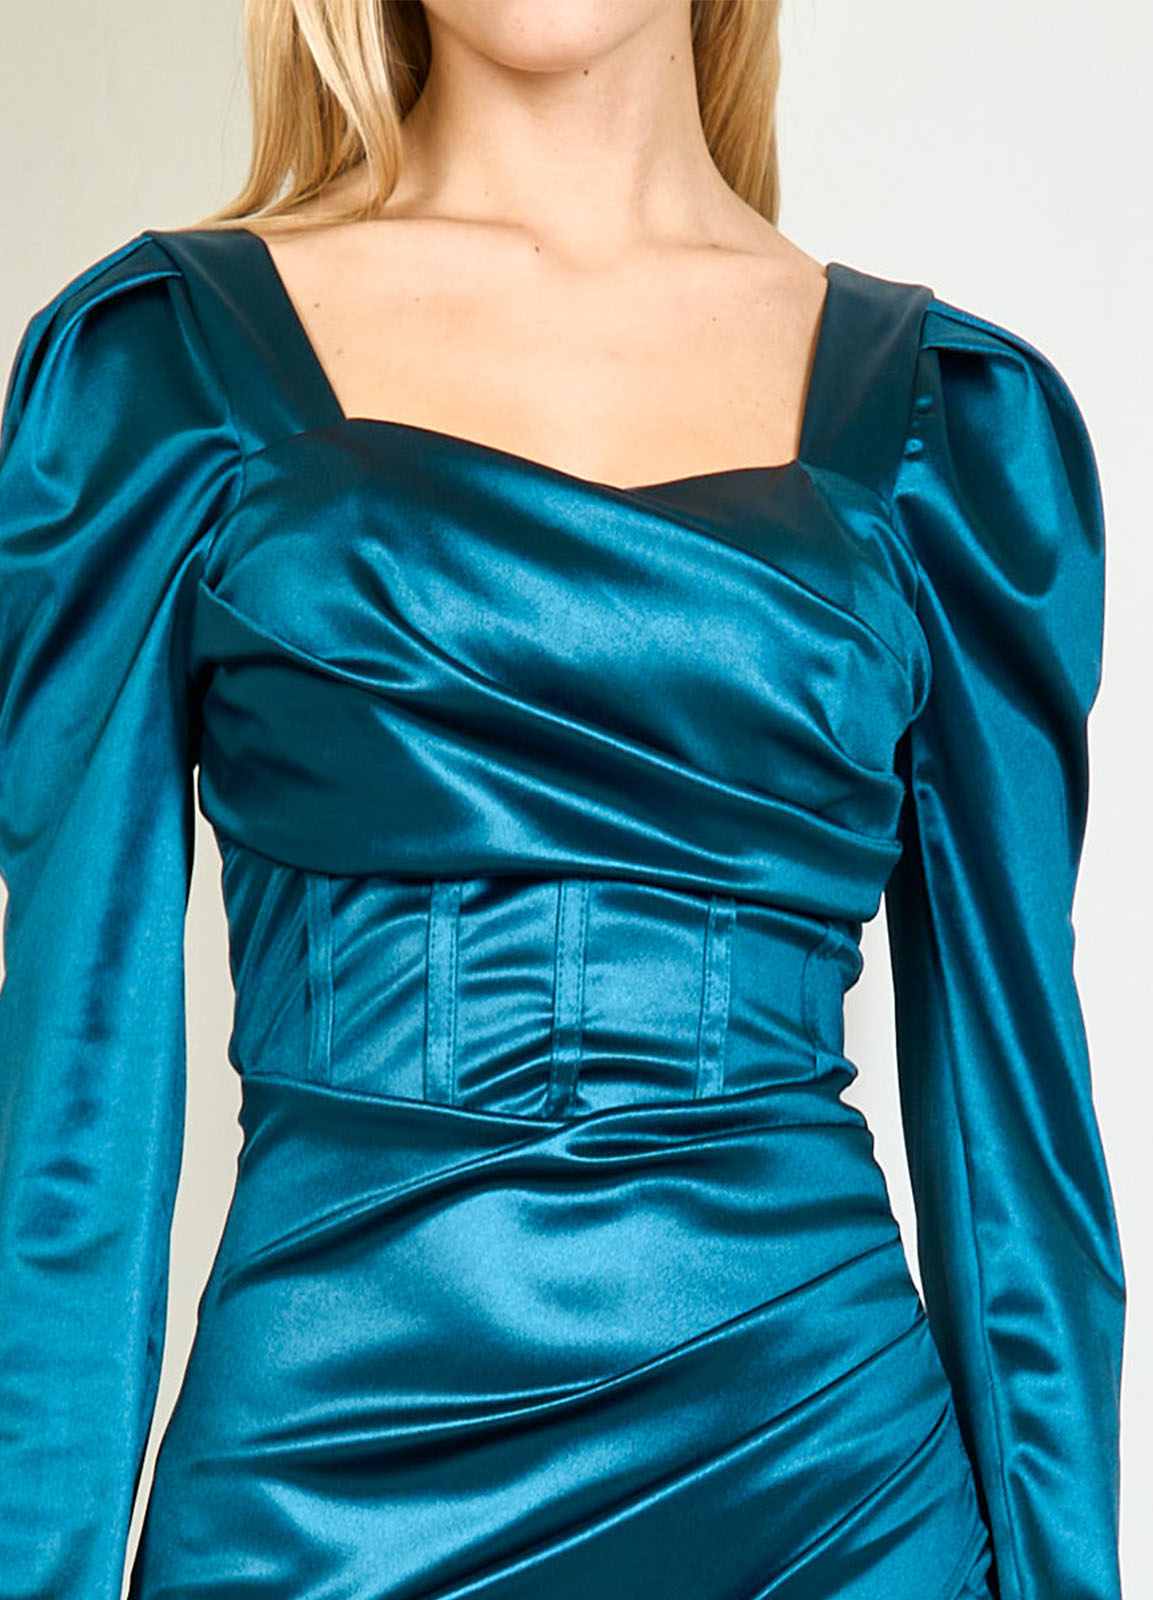 Φόρεμα Midi Σατέν Teal